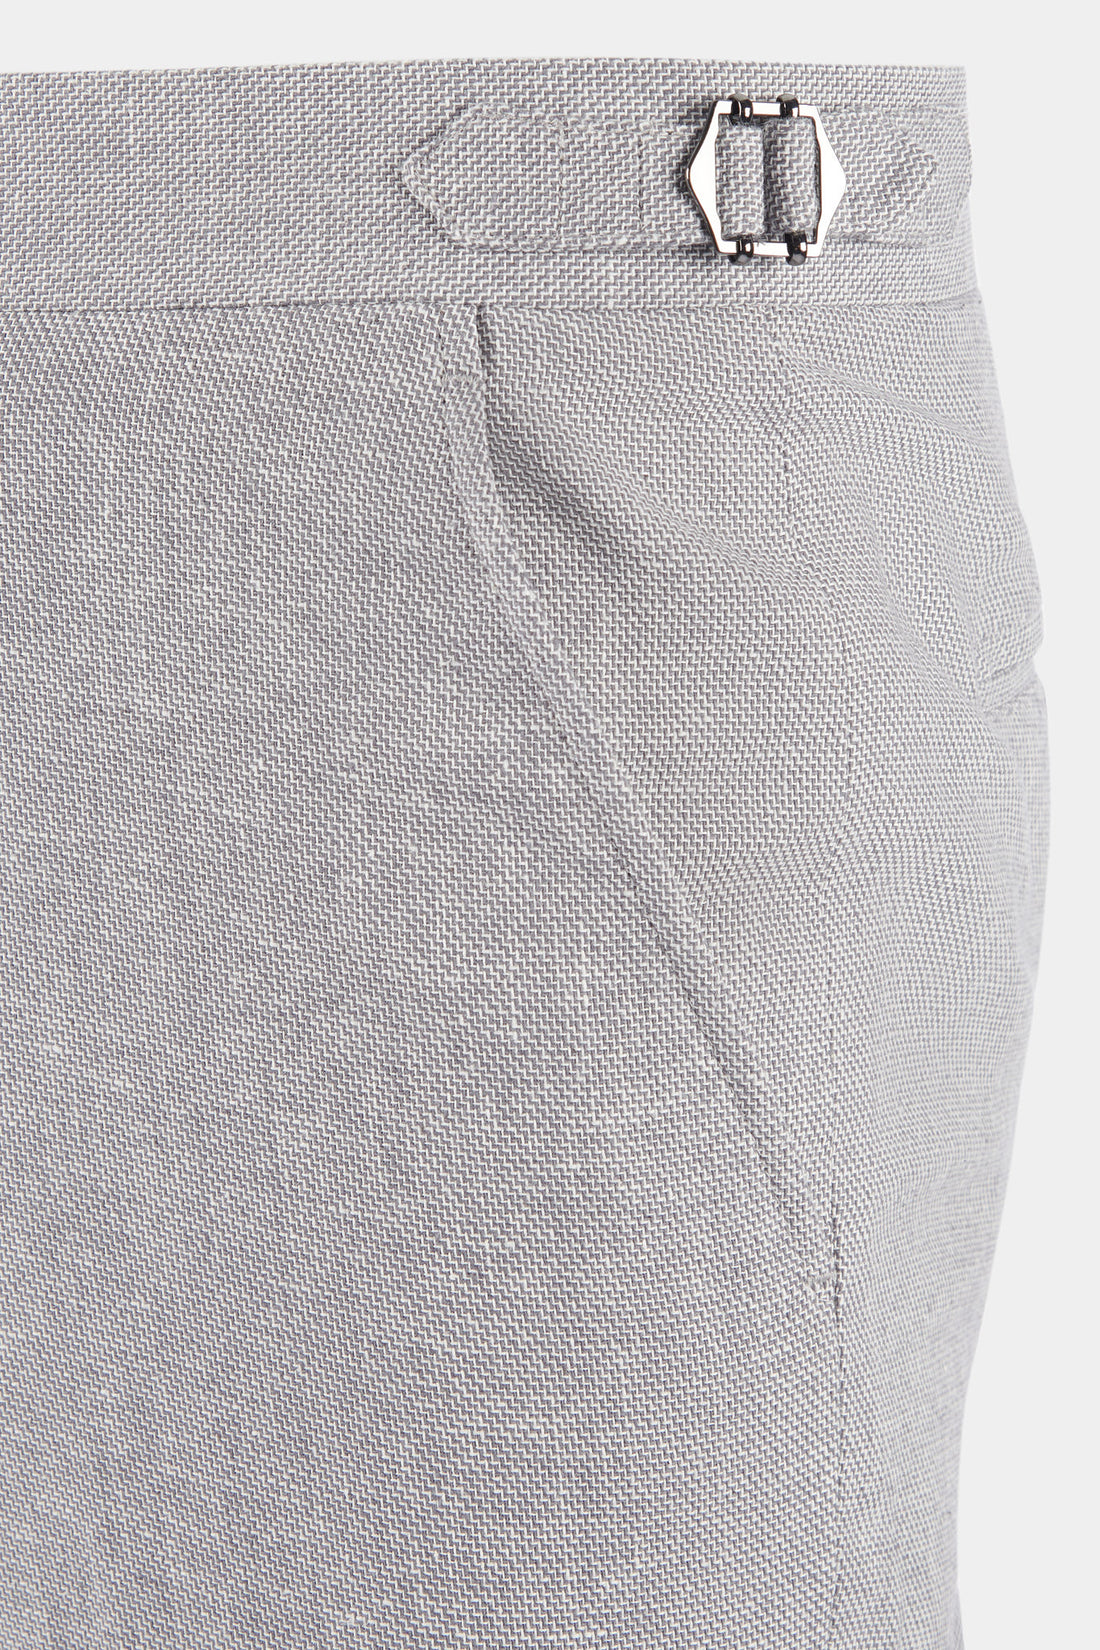 Peckham Rye Linen Blend Trousers in Luna Rock